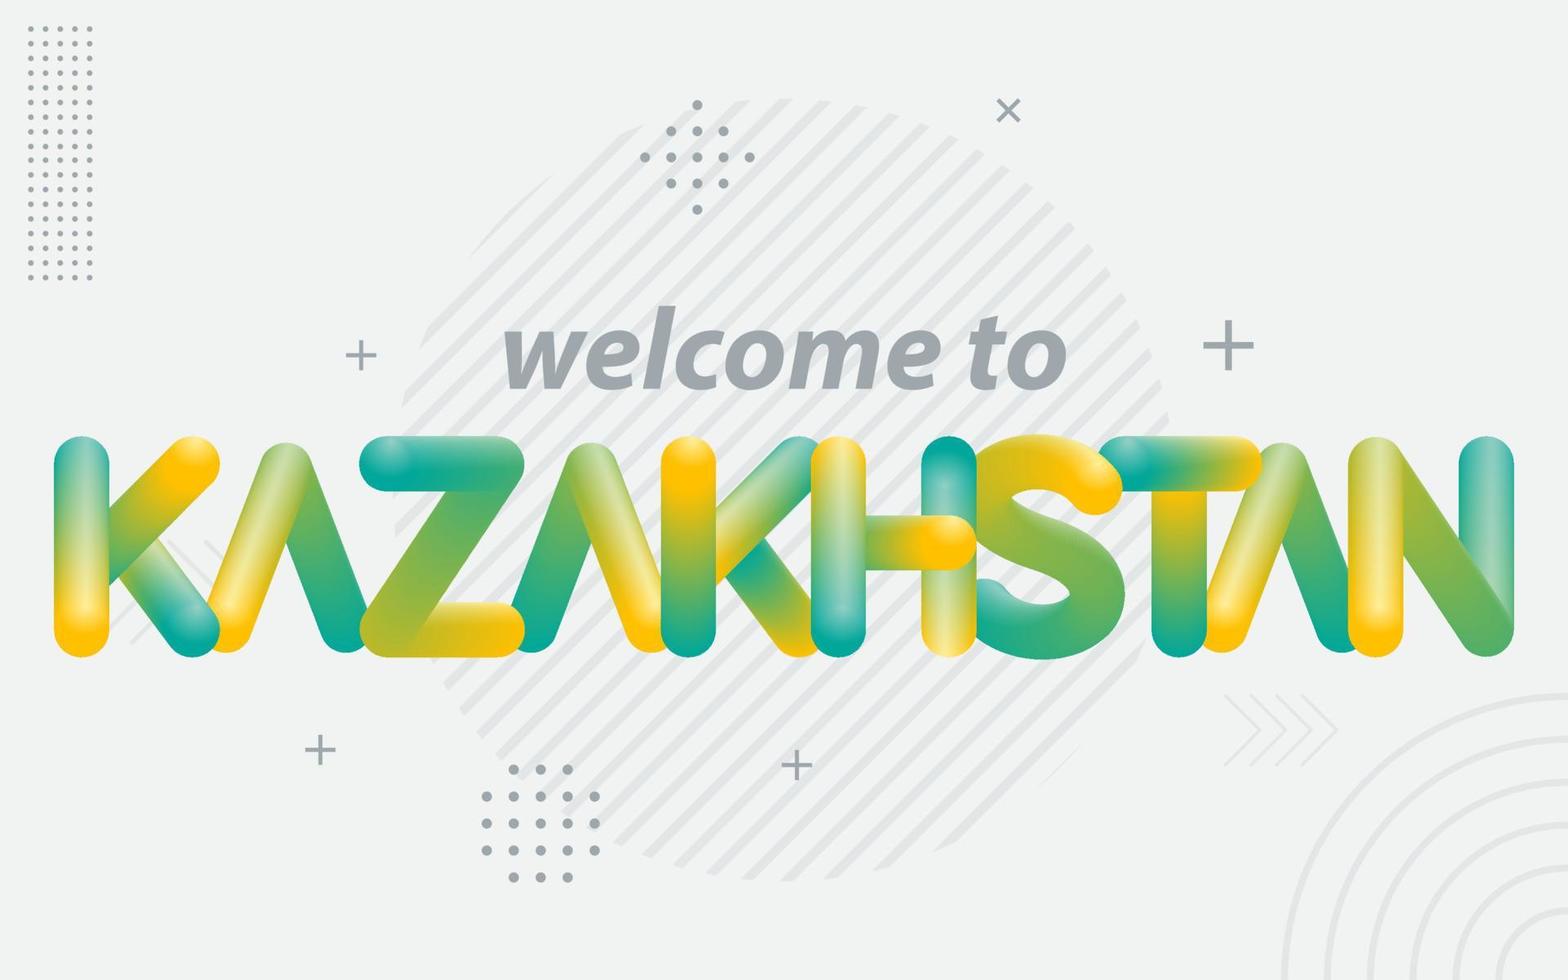 benvenuto per kazakistan. creativo tipografia con 3d miscela effetto vettore